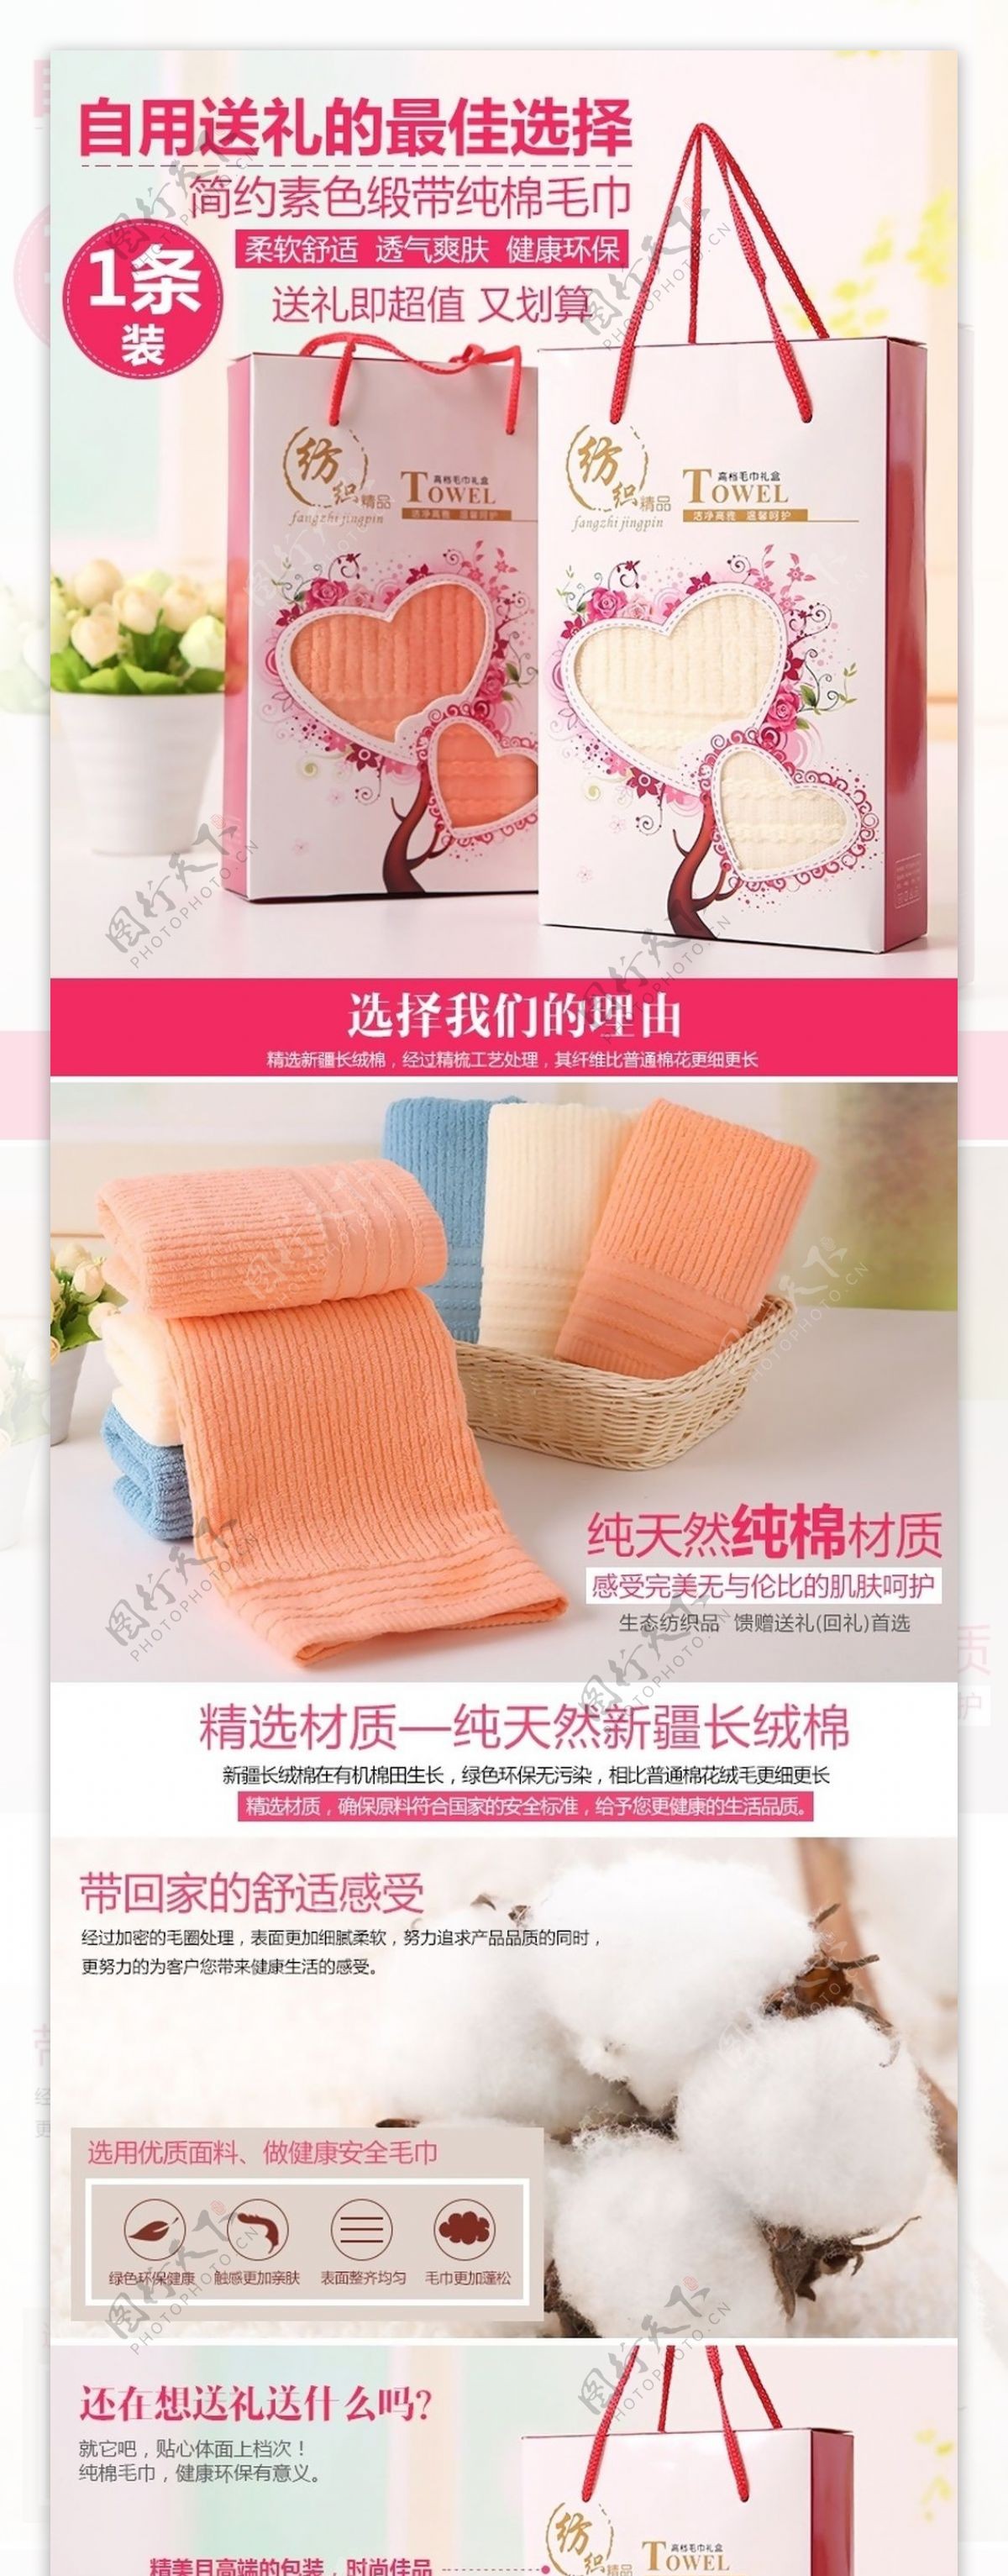 毛巾礼盒描述家庭日用品生活用品